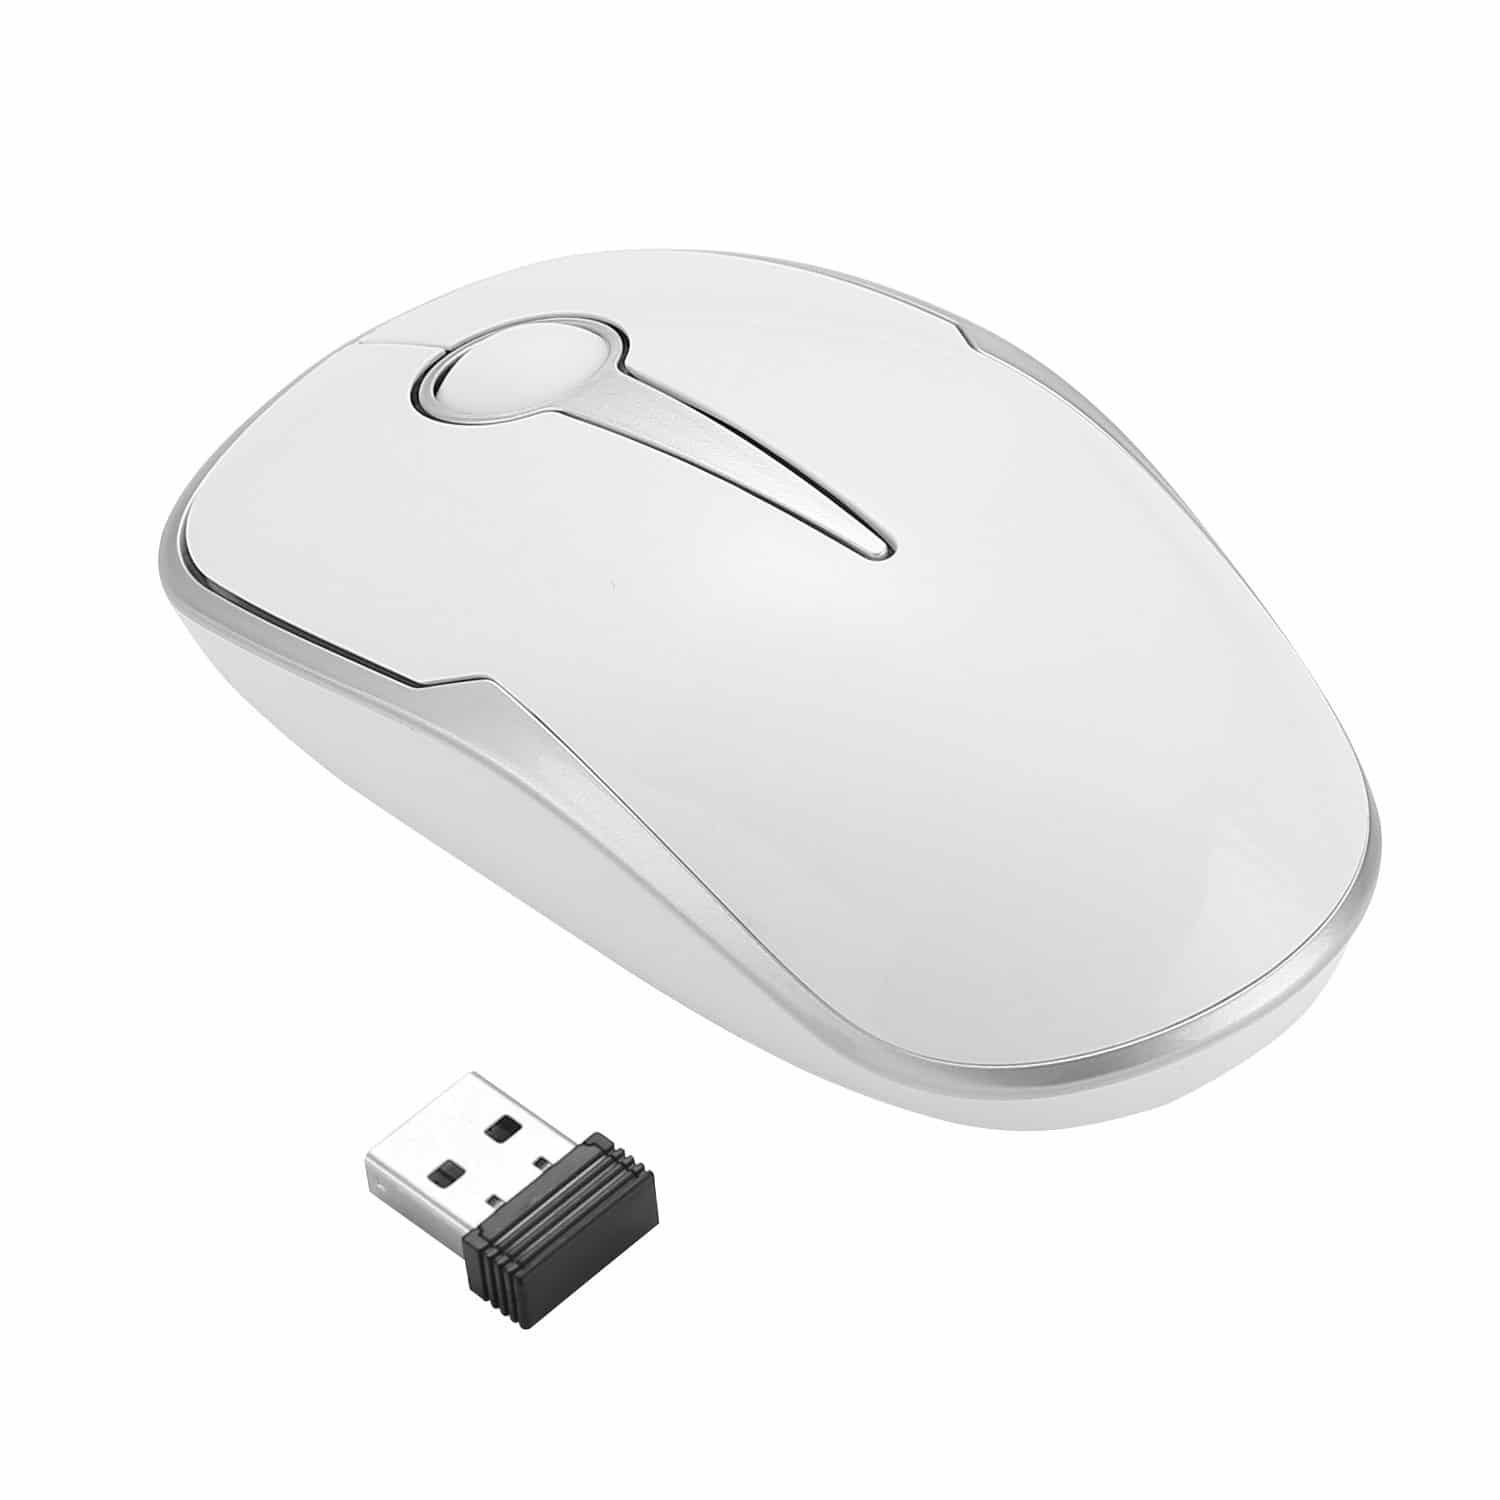 Best Wireless Mice To Buy In 2017